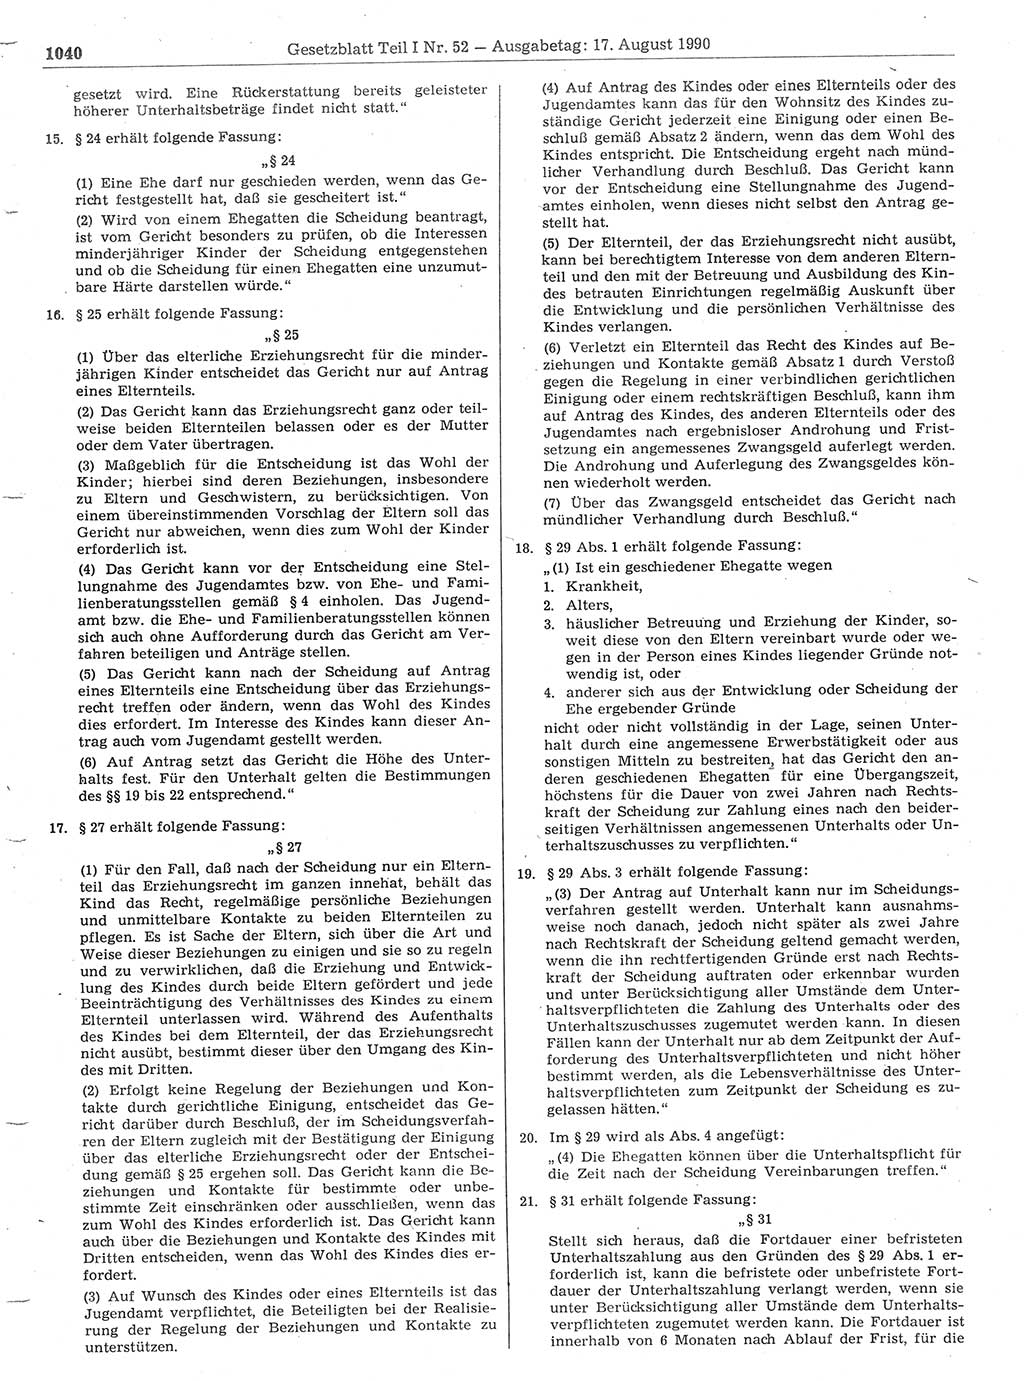 Gesetzblatt (GBl.) der Deutschen Demokratischen Republik (DDR) Teil Ⅰ 1990, Seite 1040 (GBl. DDR Ⅰ 1990, S. 1040)